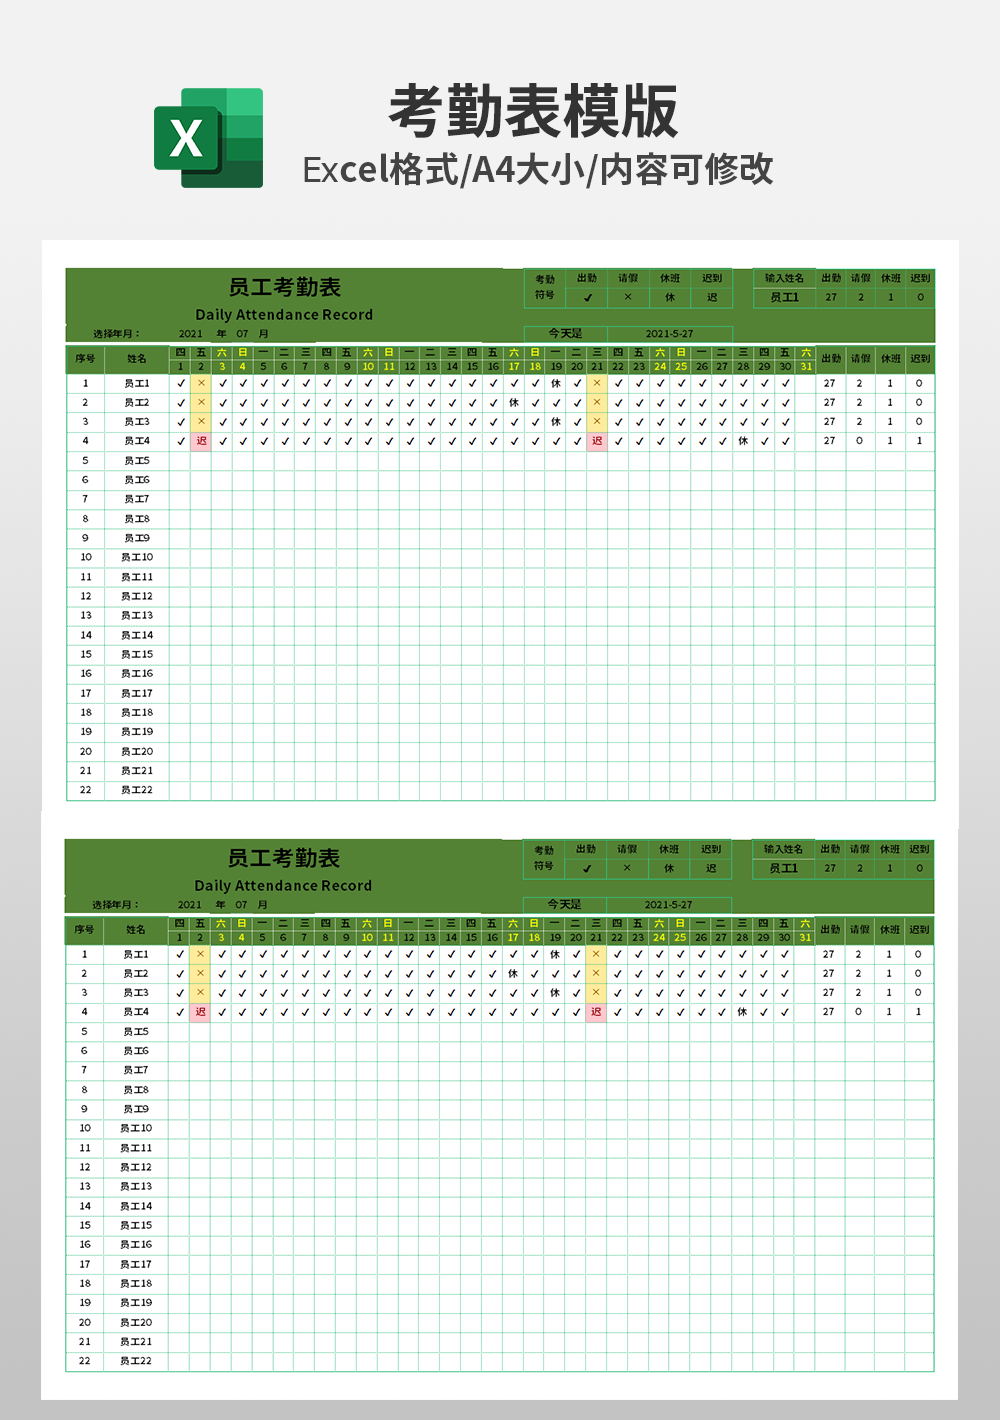 考勤系统员工考勤表Excel模板